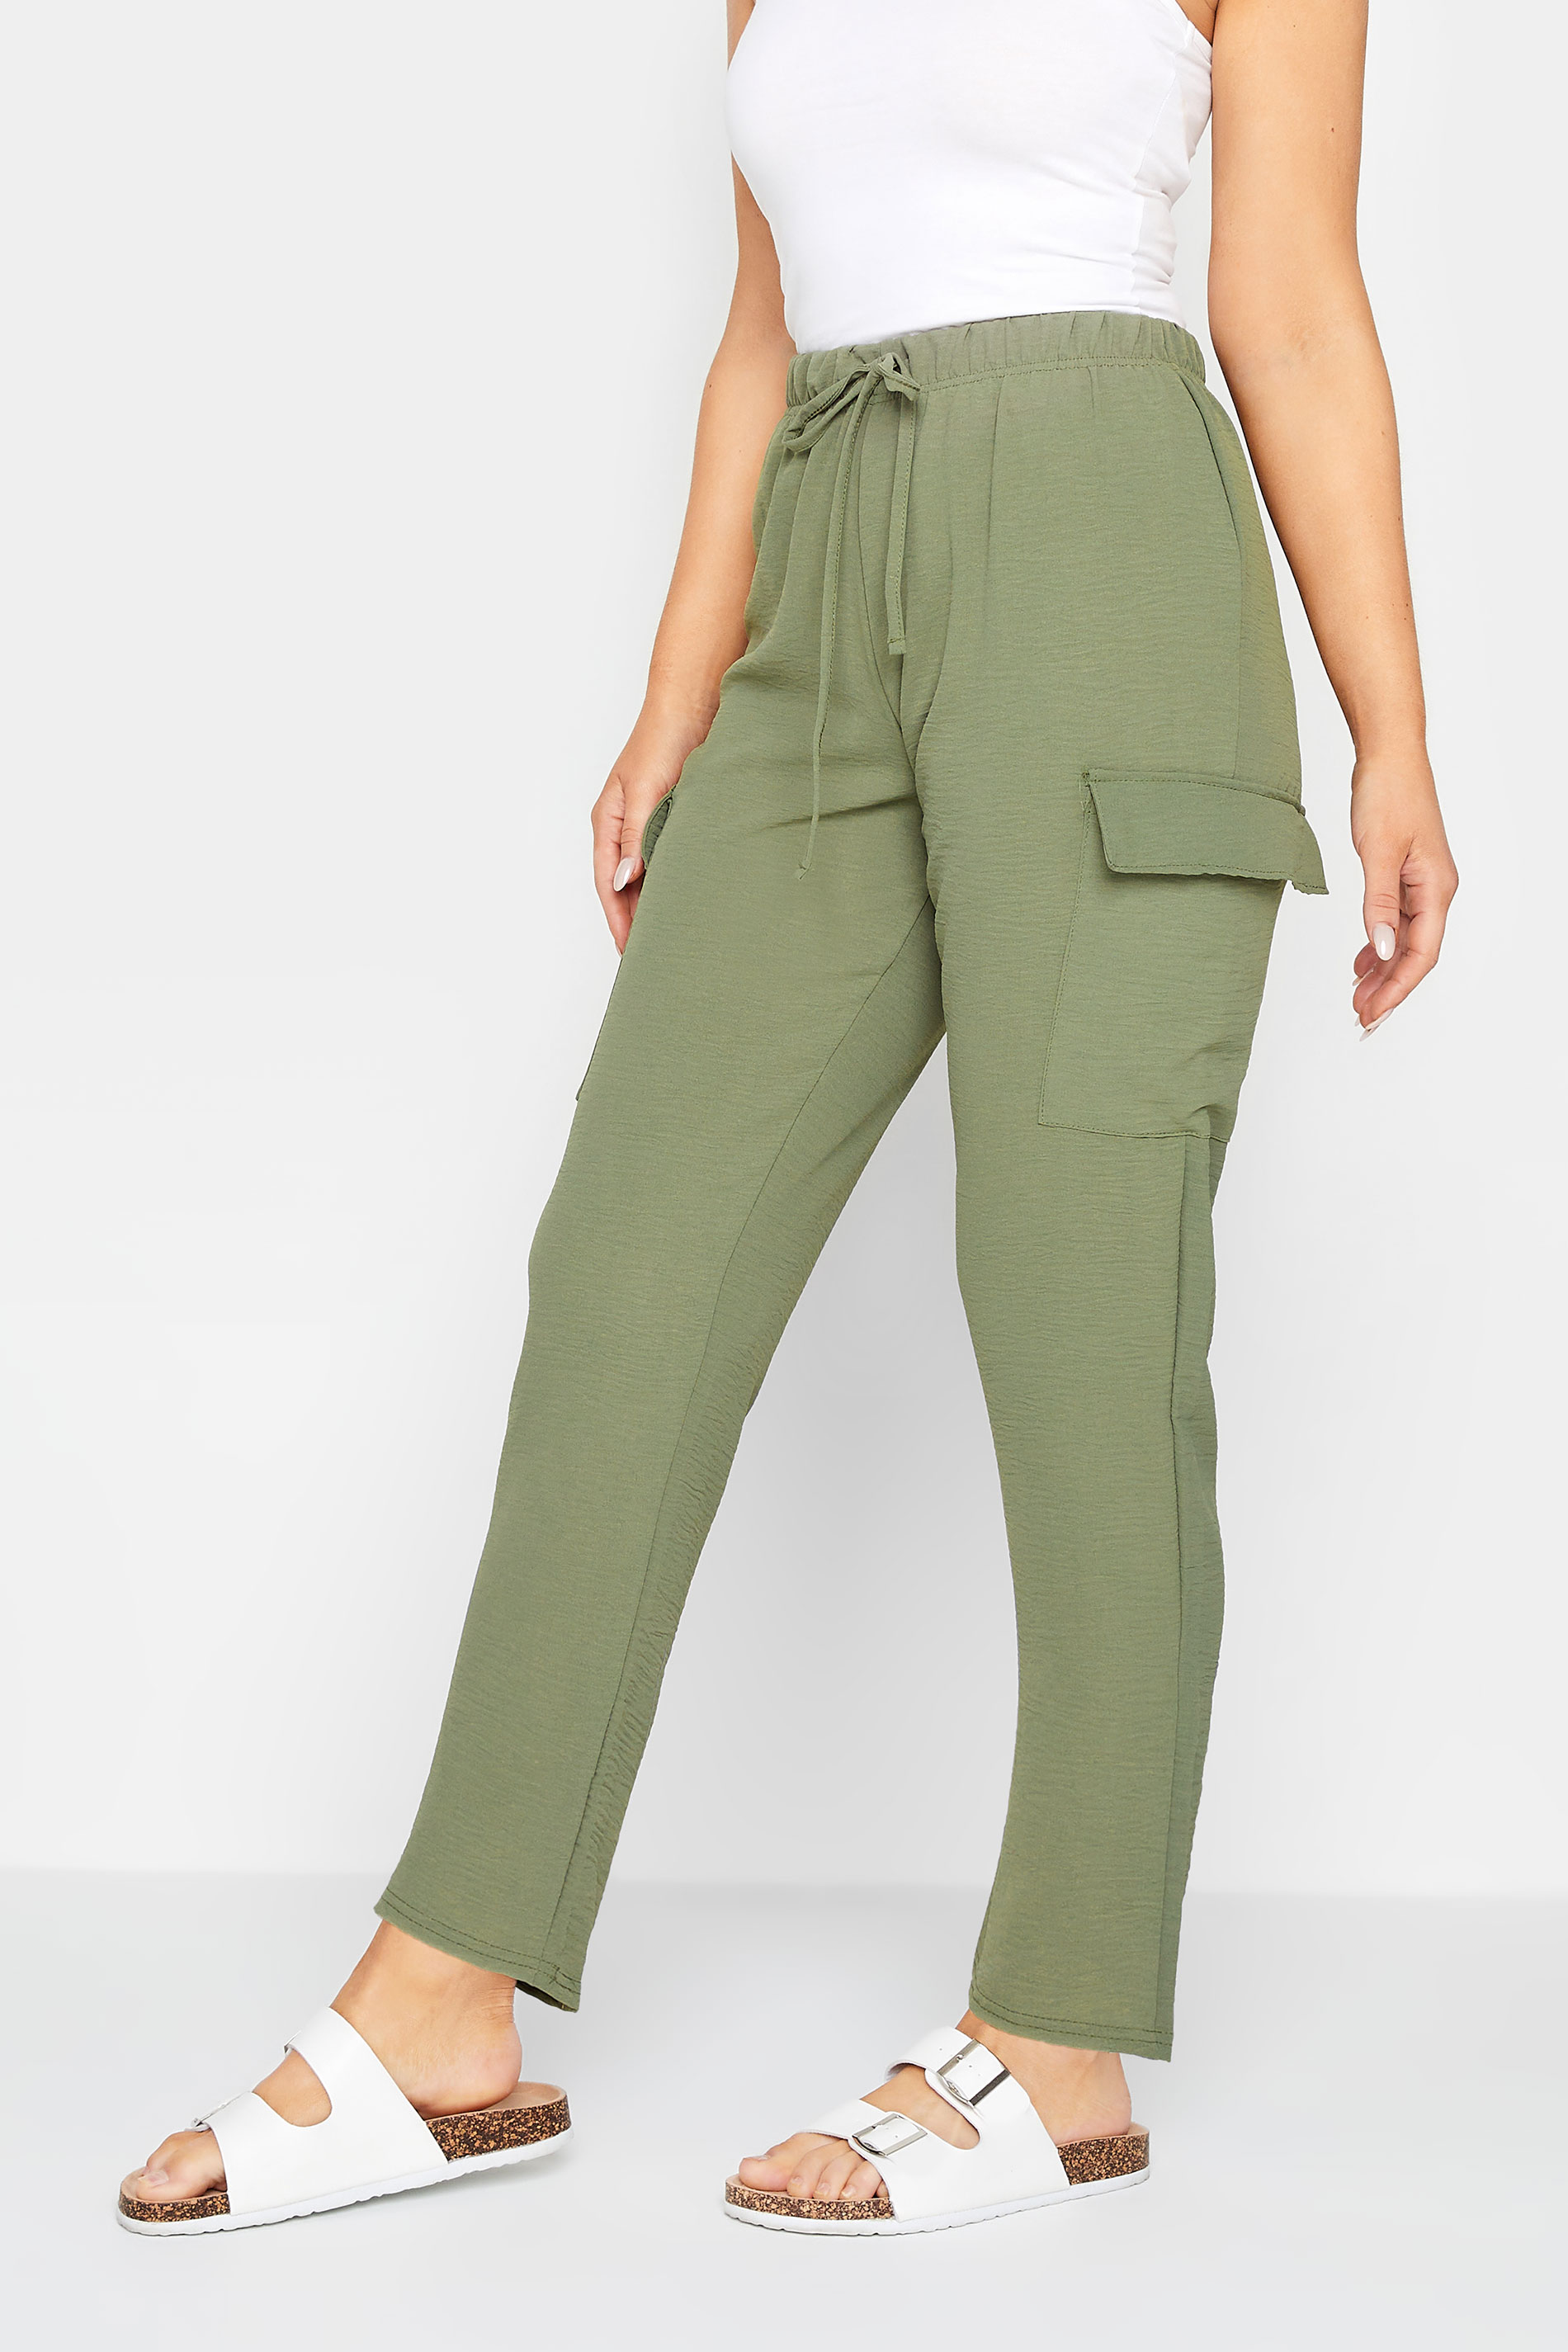 M&Co Khaki Green Cargo Slim Leg Trousers | M&Co 1